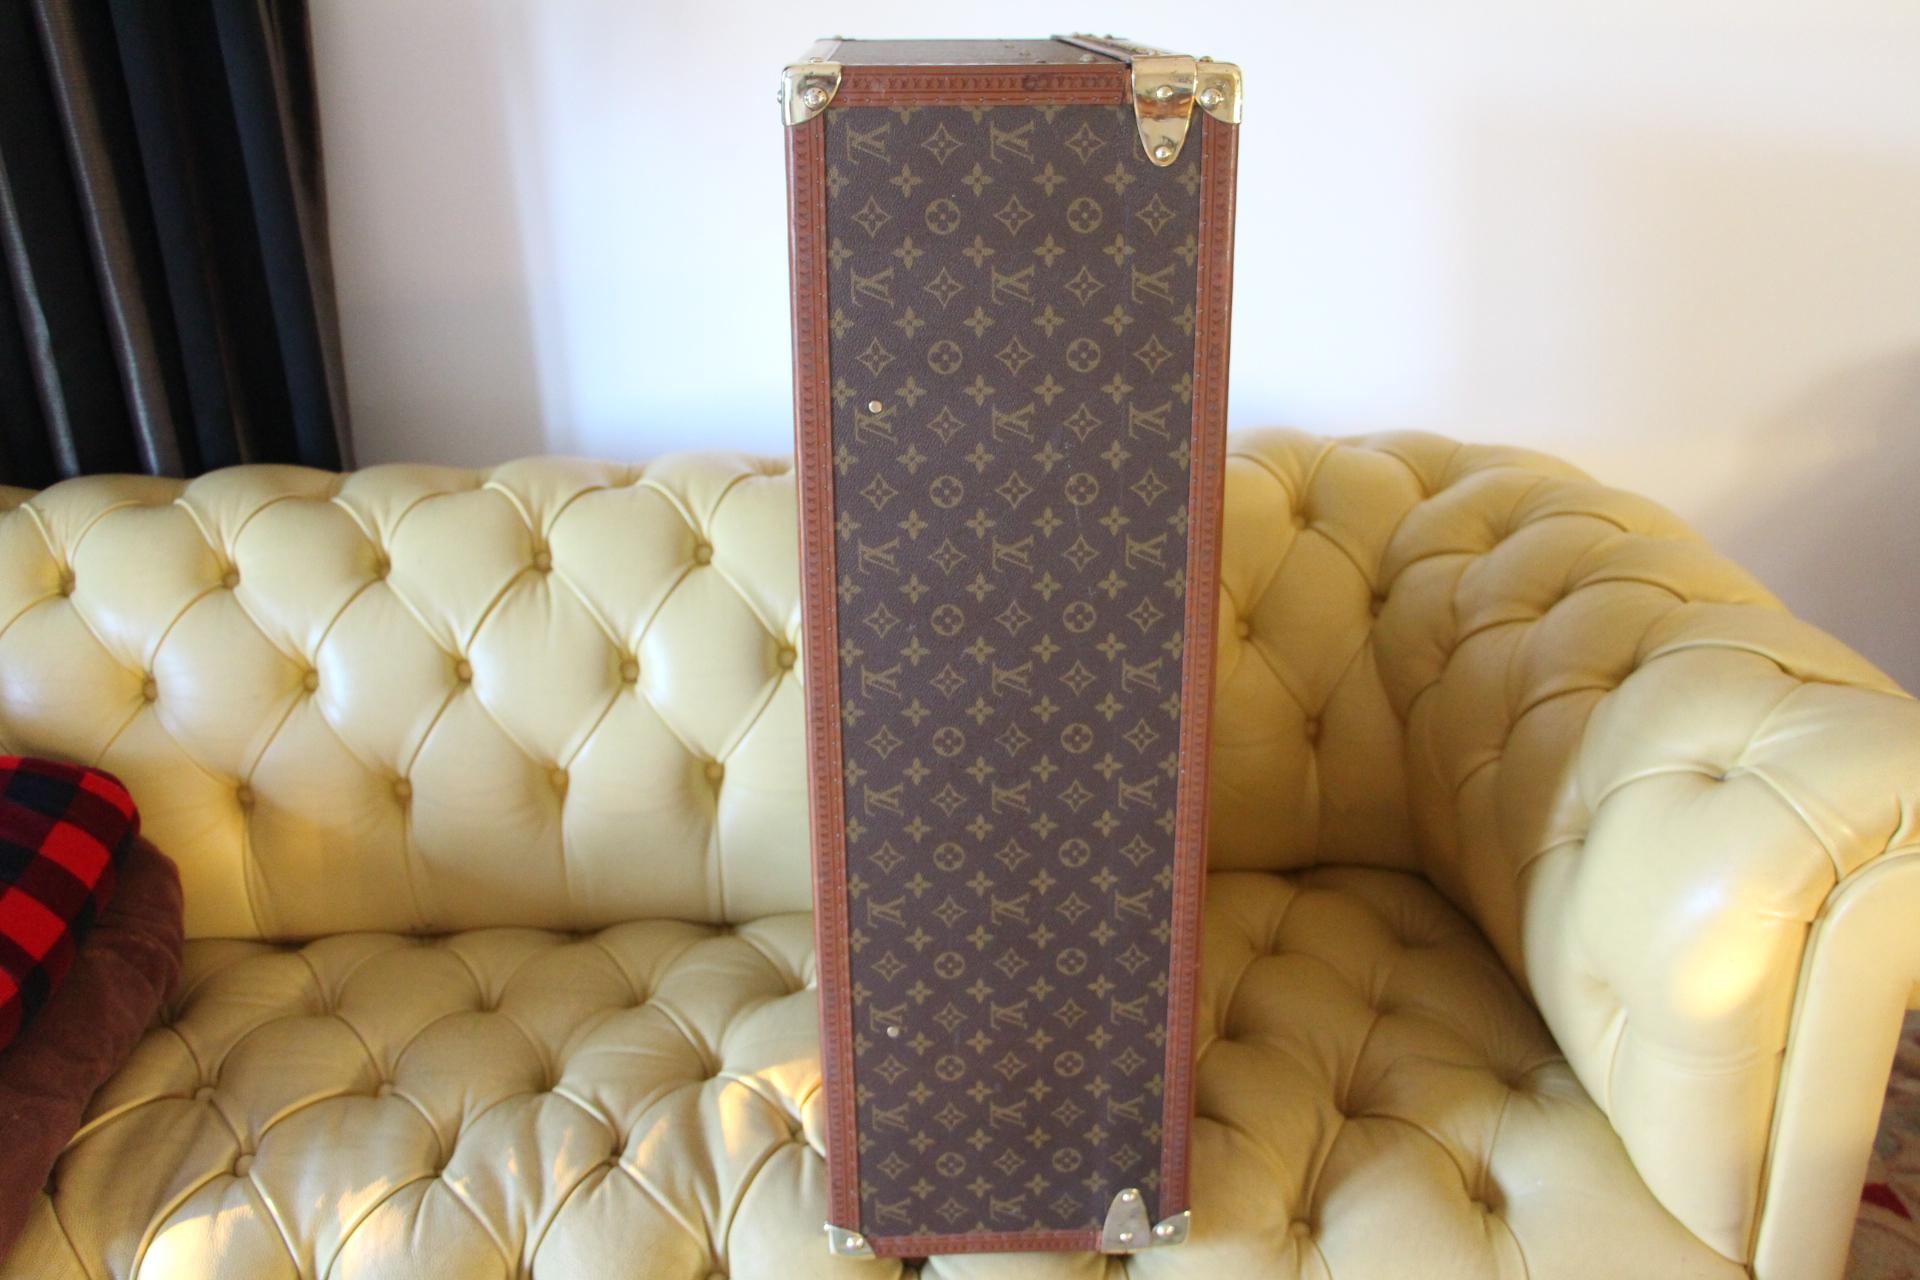  Louis Vuitton Suitcase, Alzer 80 Louis Vuitton Suitcase, Large Vuitton Suitcase 5